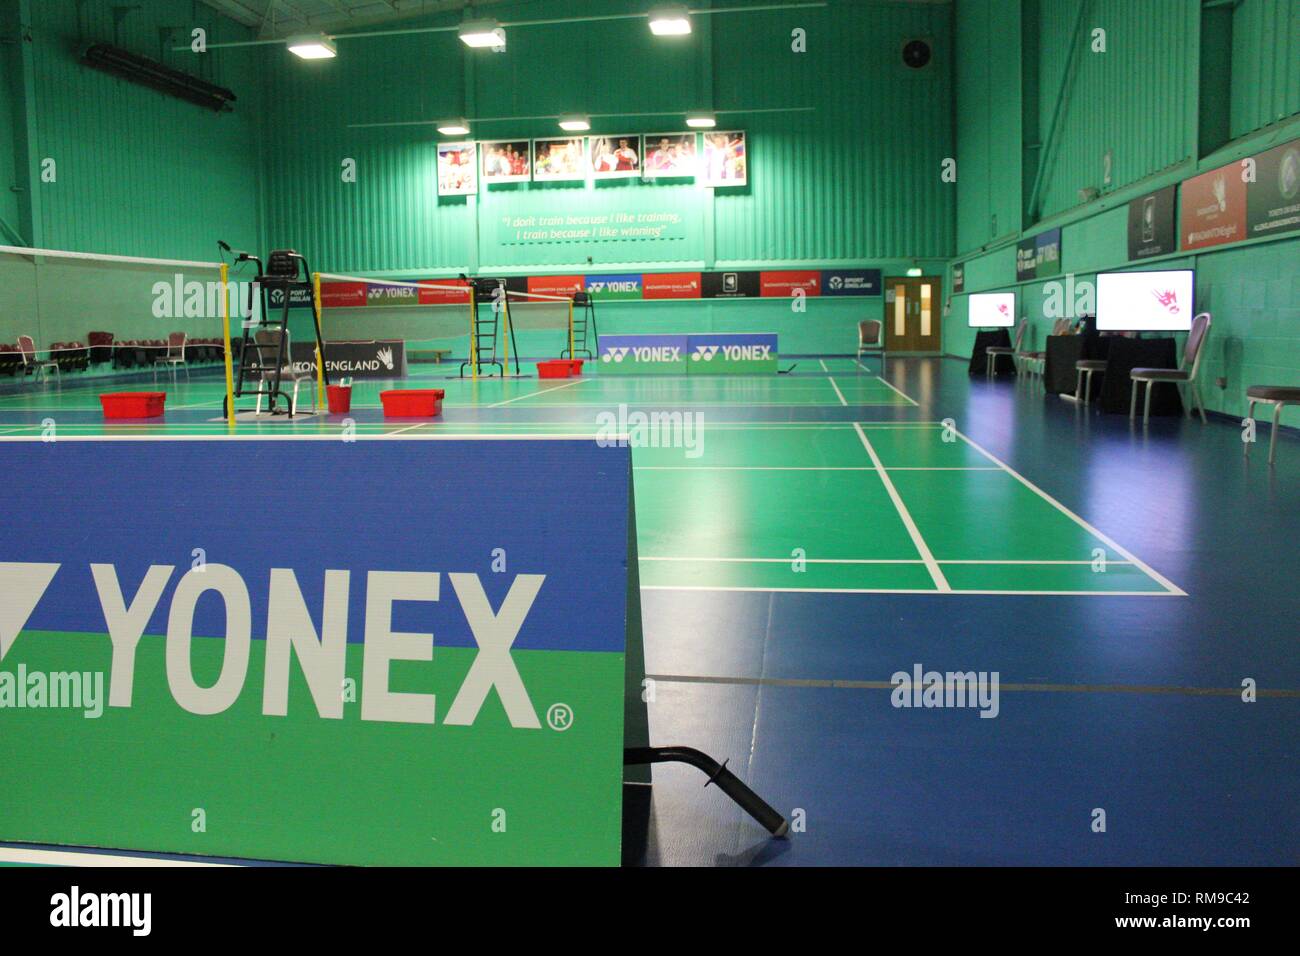 Championnats de badminton Yonex au centre d'entraînement de milton keynes, en Angleterre Banque D'Images